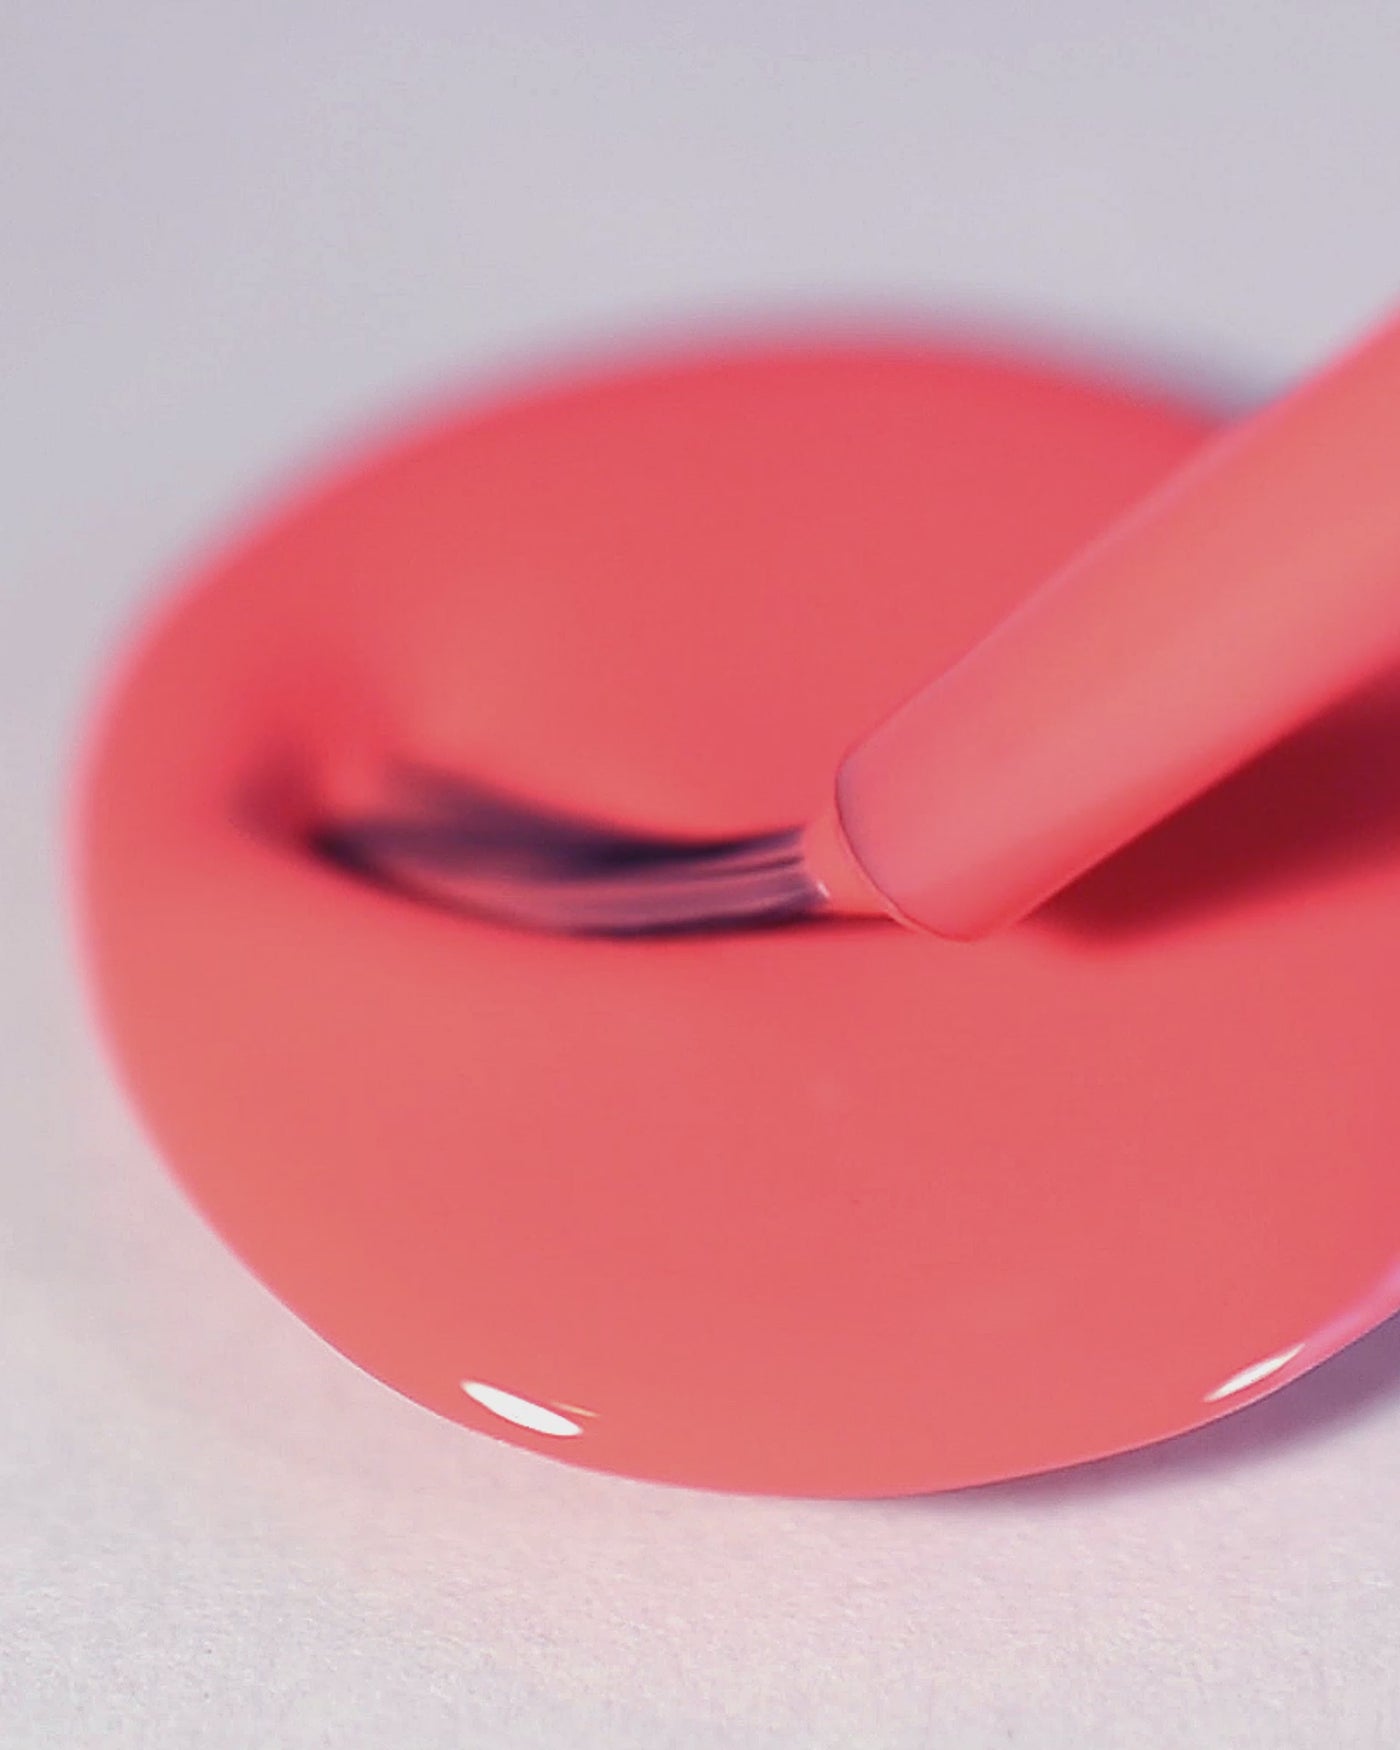 grapefruit pink nail polish drop